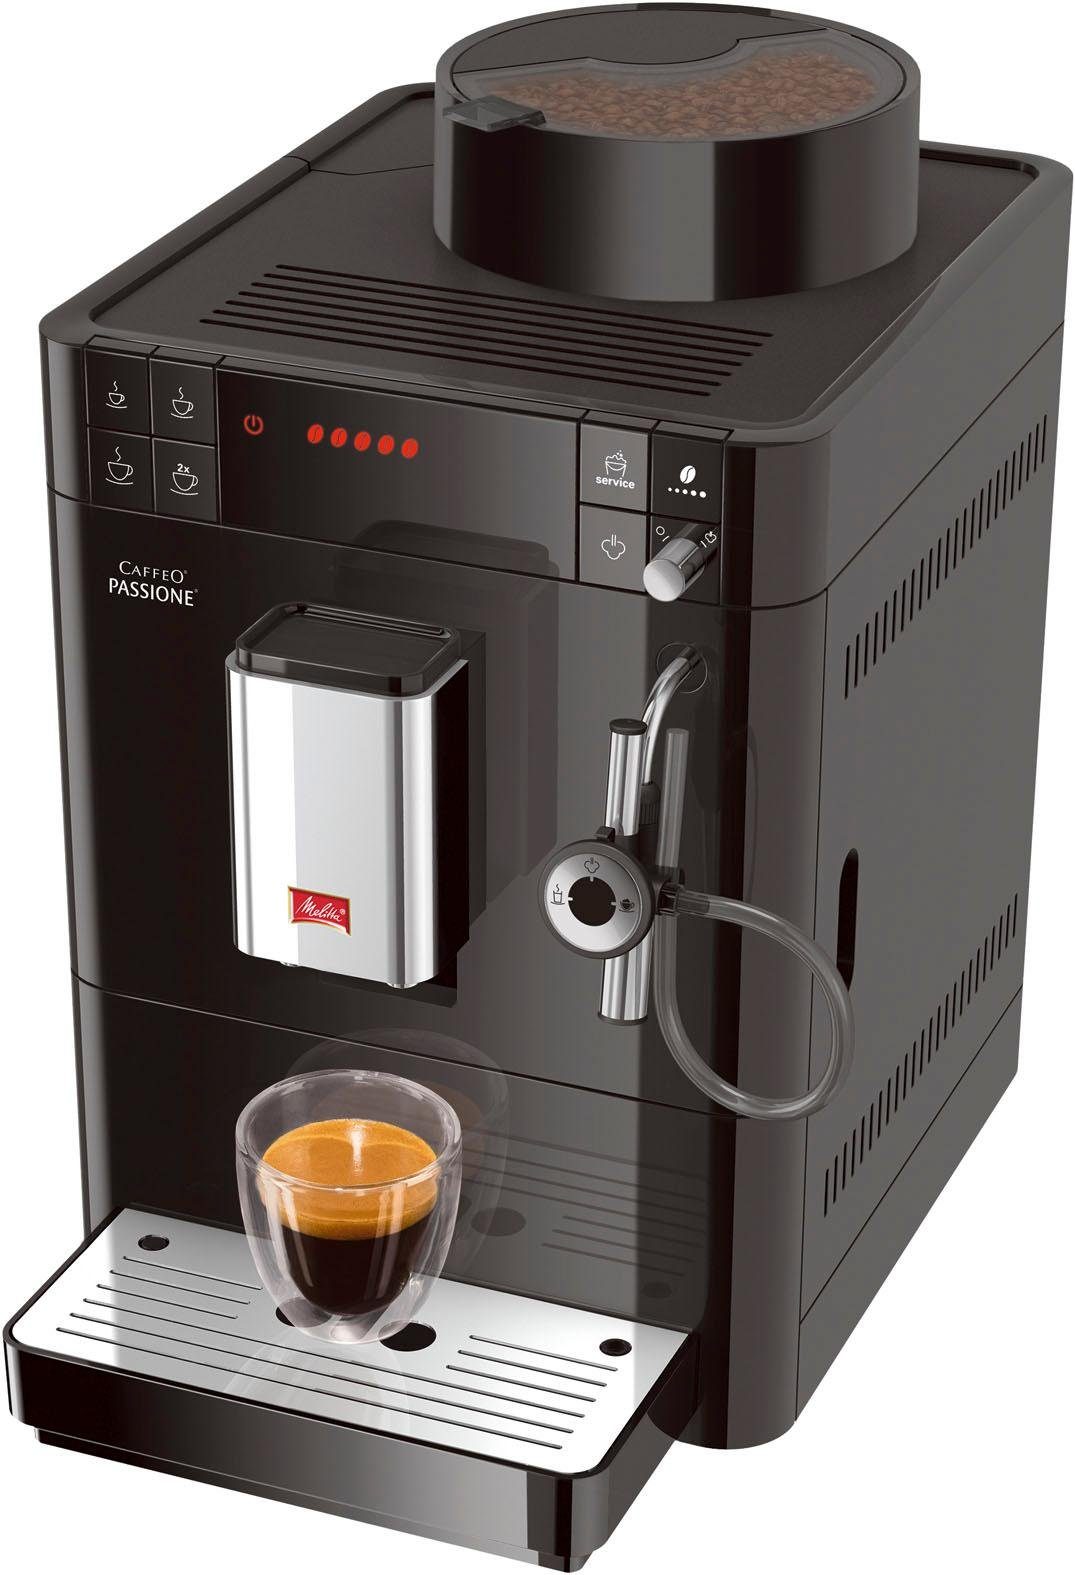 Melitta Kaffeevollautomat Passione® F53/0-102 schwarz, Tassengenau frisch  gemahlen, Service-Taste für Entkalkung & | Kaffeevollautomaten